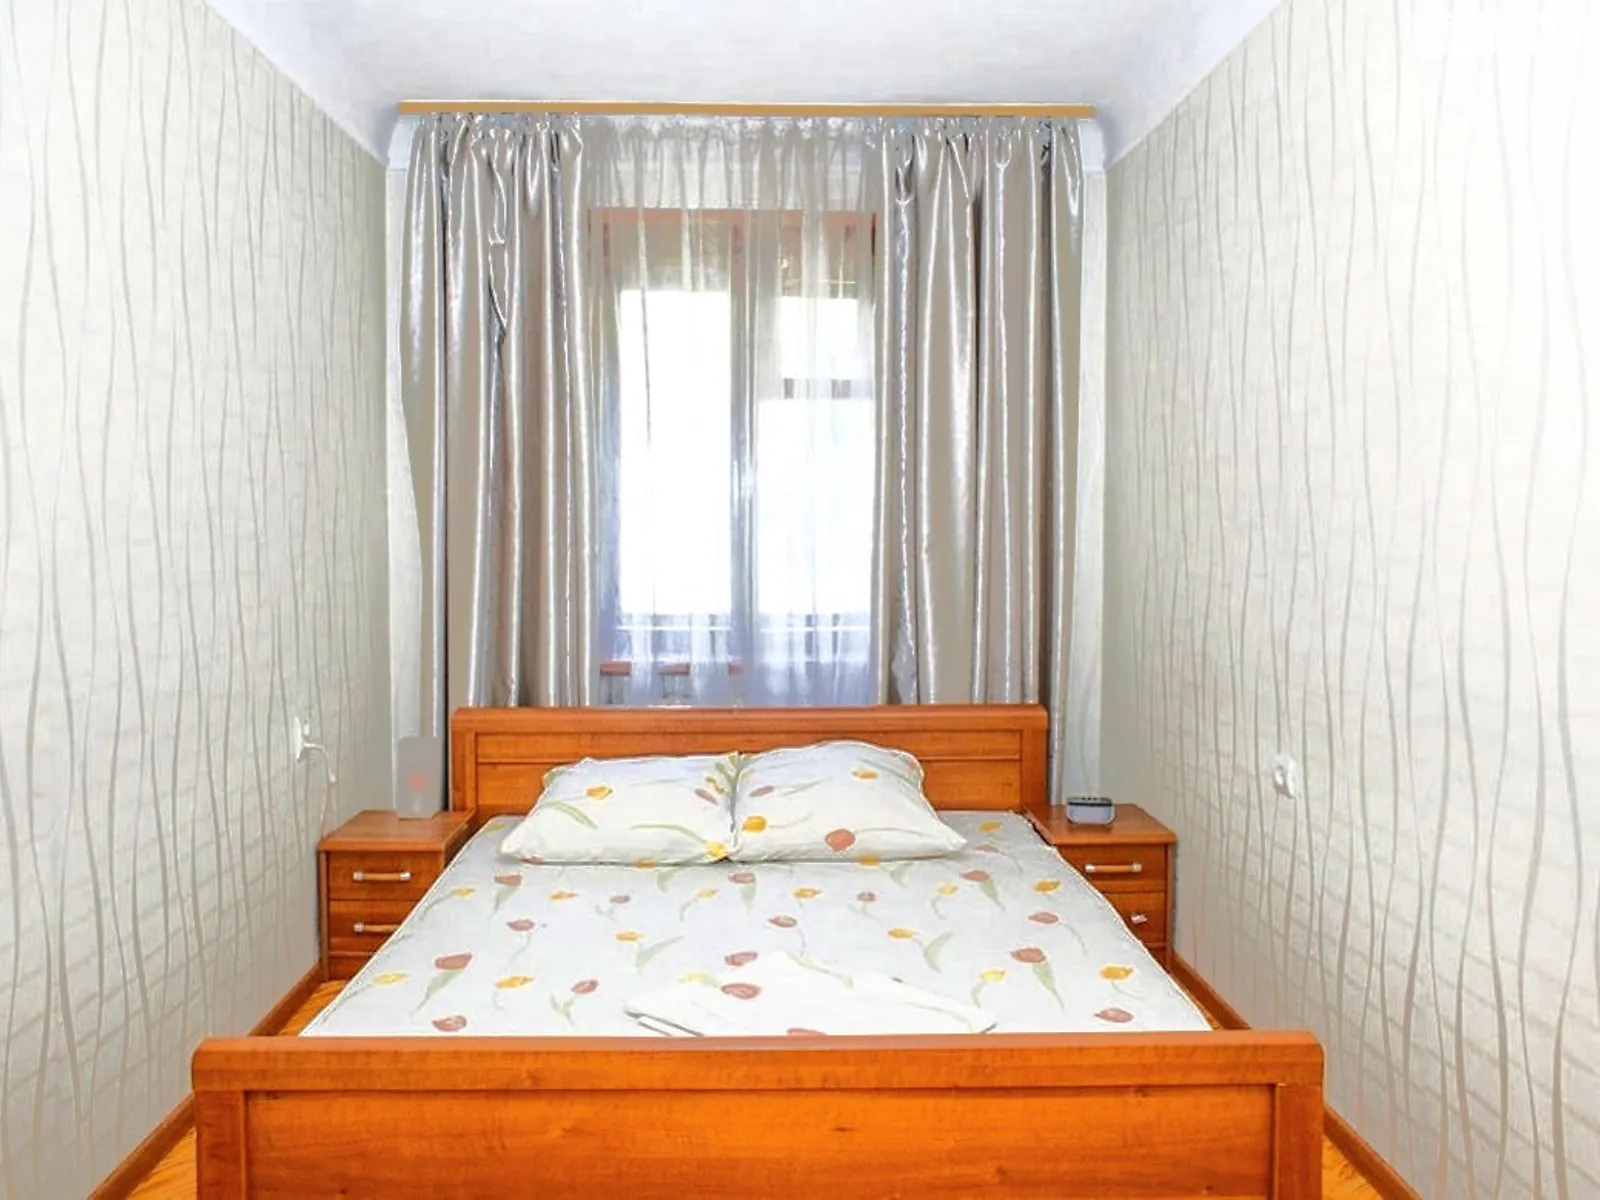 2-кімнатна квартира у Запоріжжі, цена: 750 грн - фото 1